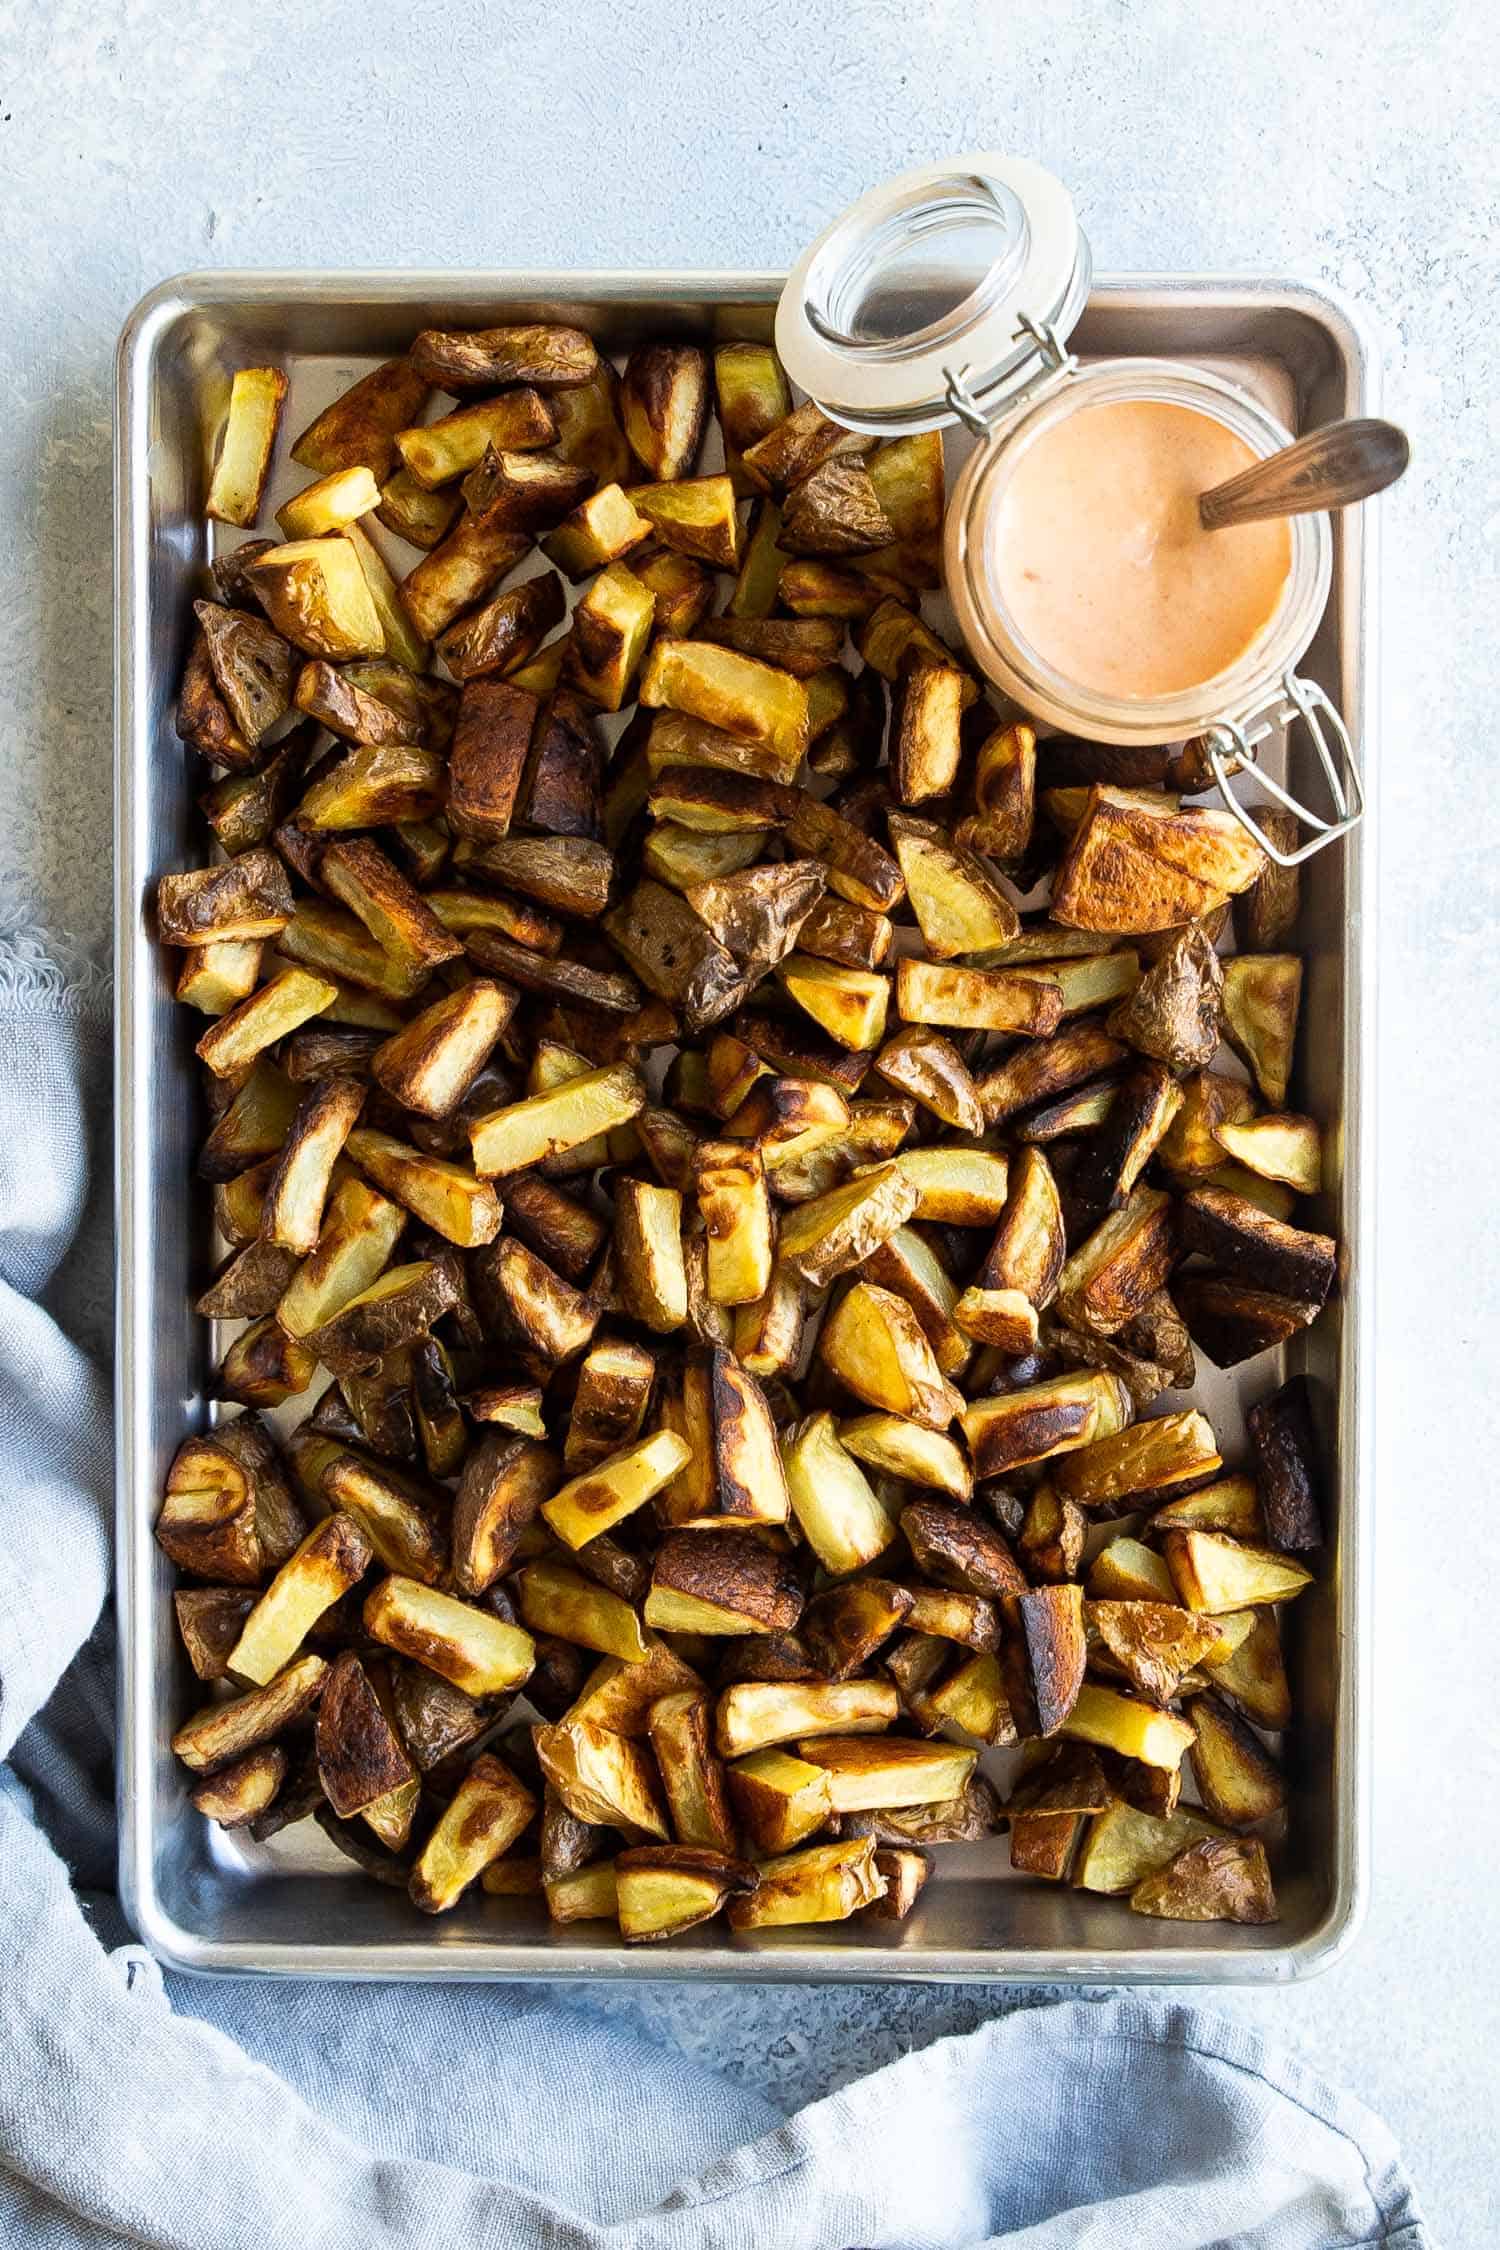  roasted potatoes on a baking sheet